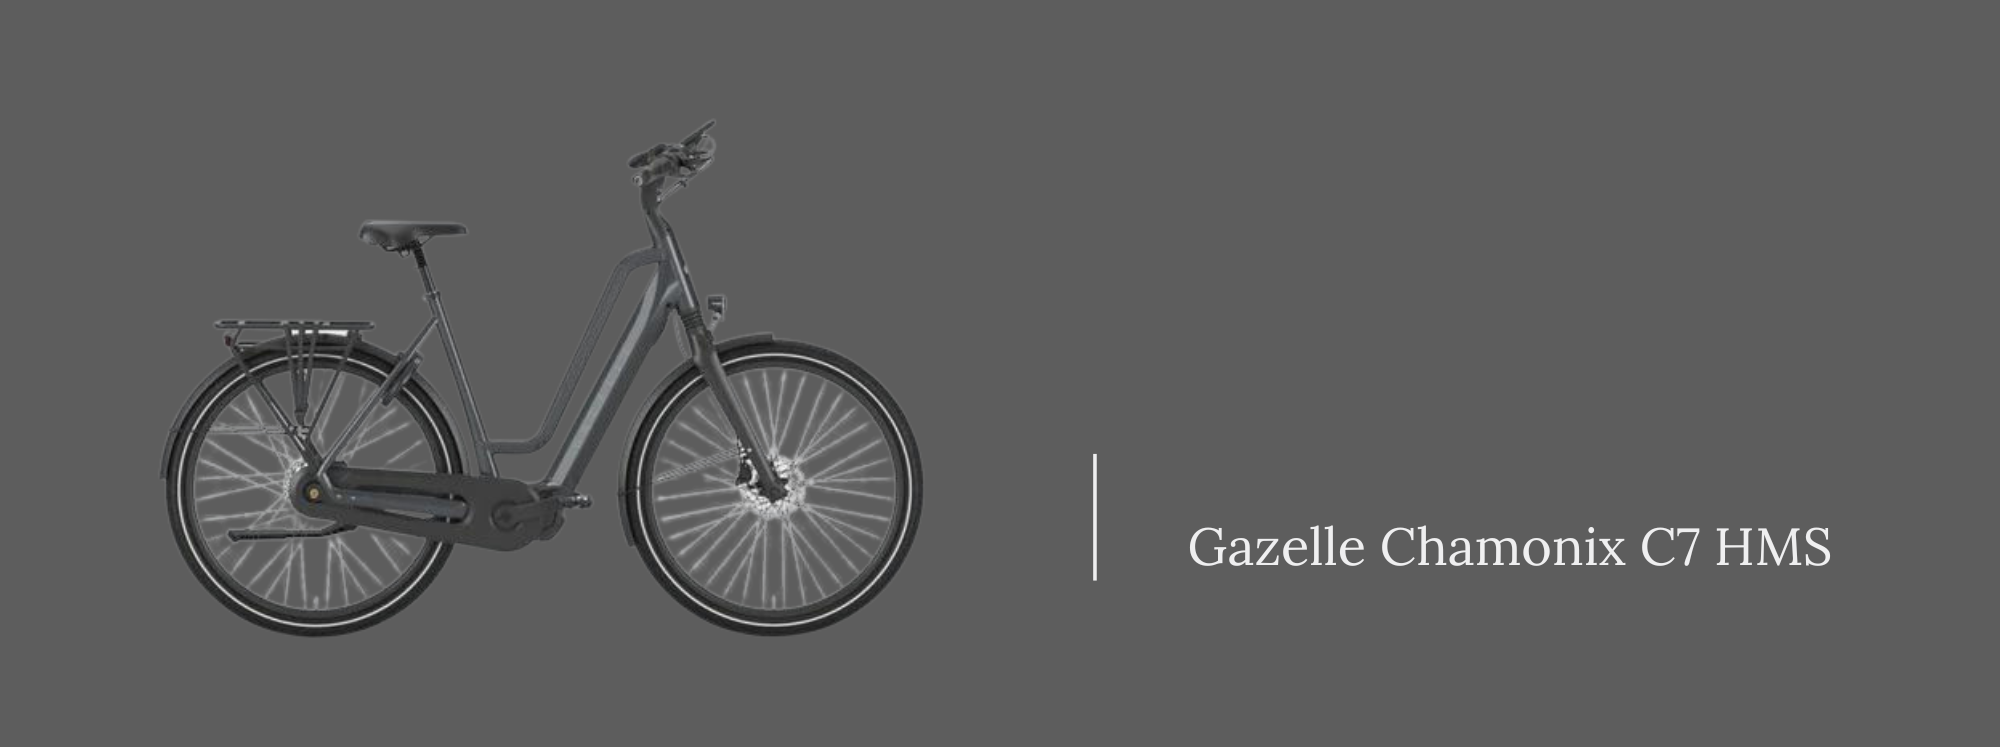 gazelle chamonix c7 hms shimano steps electric bike motor